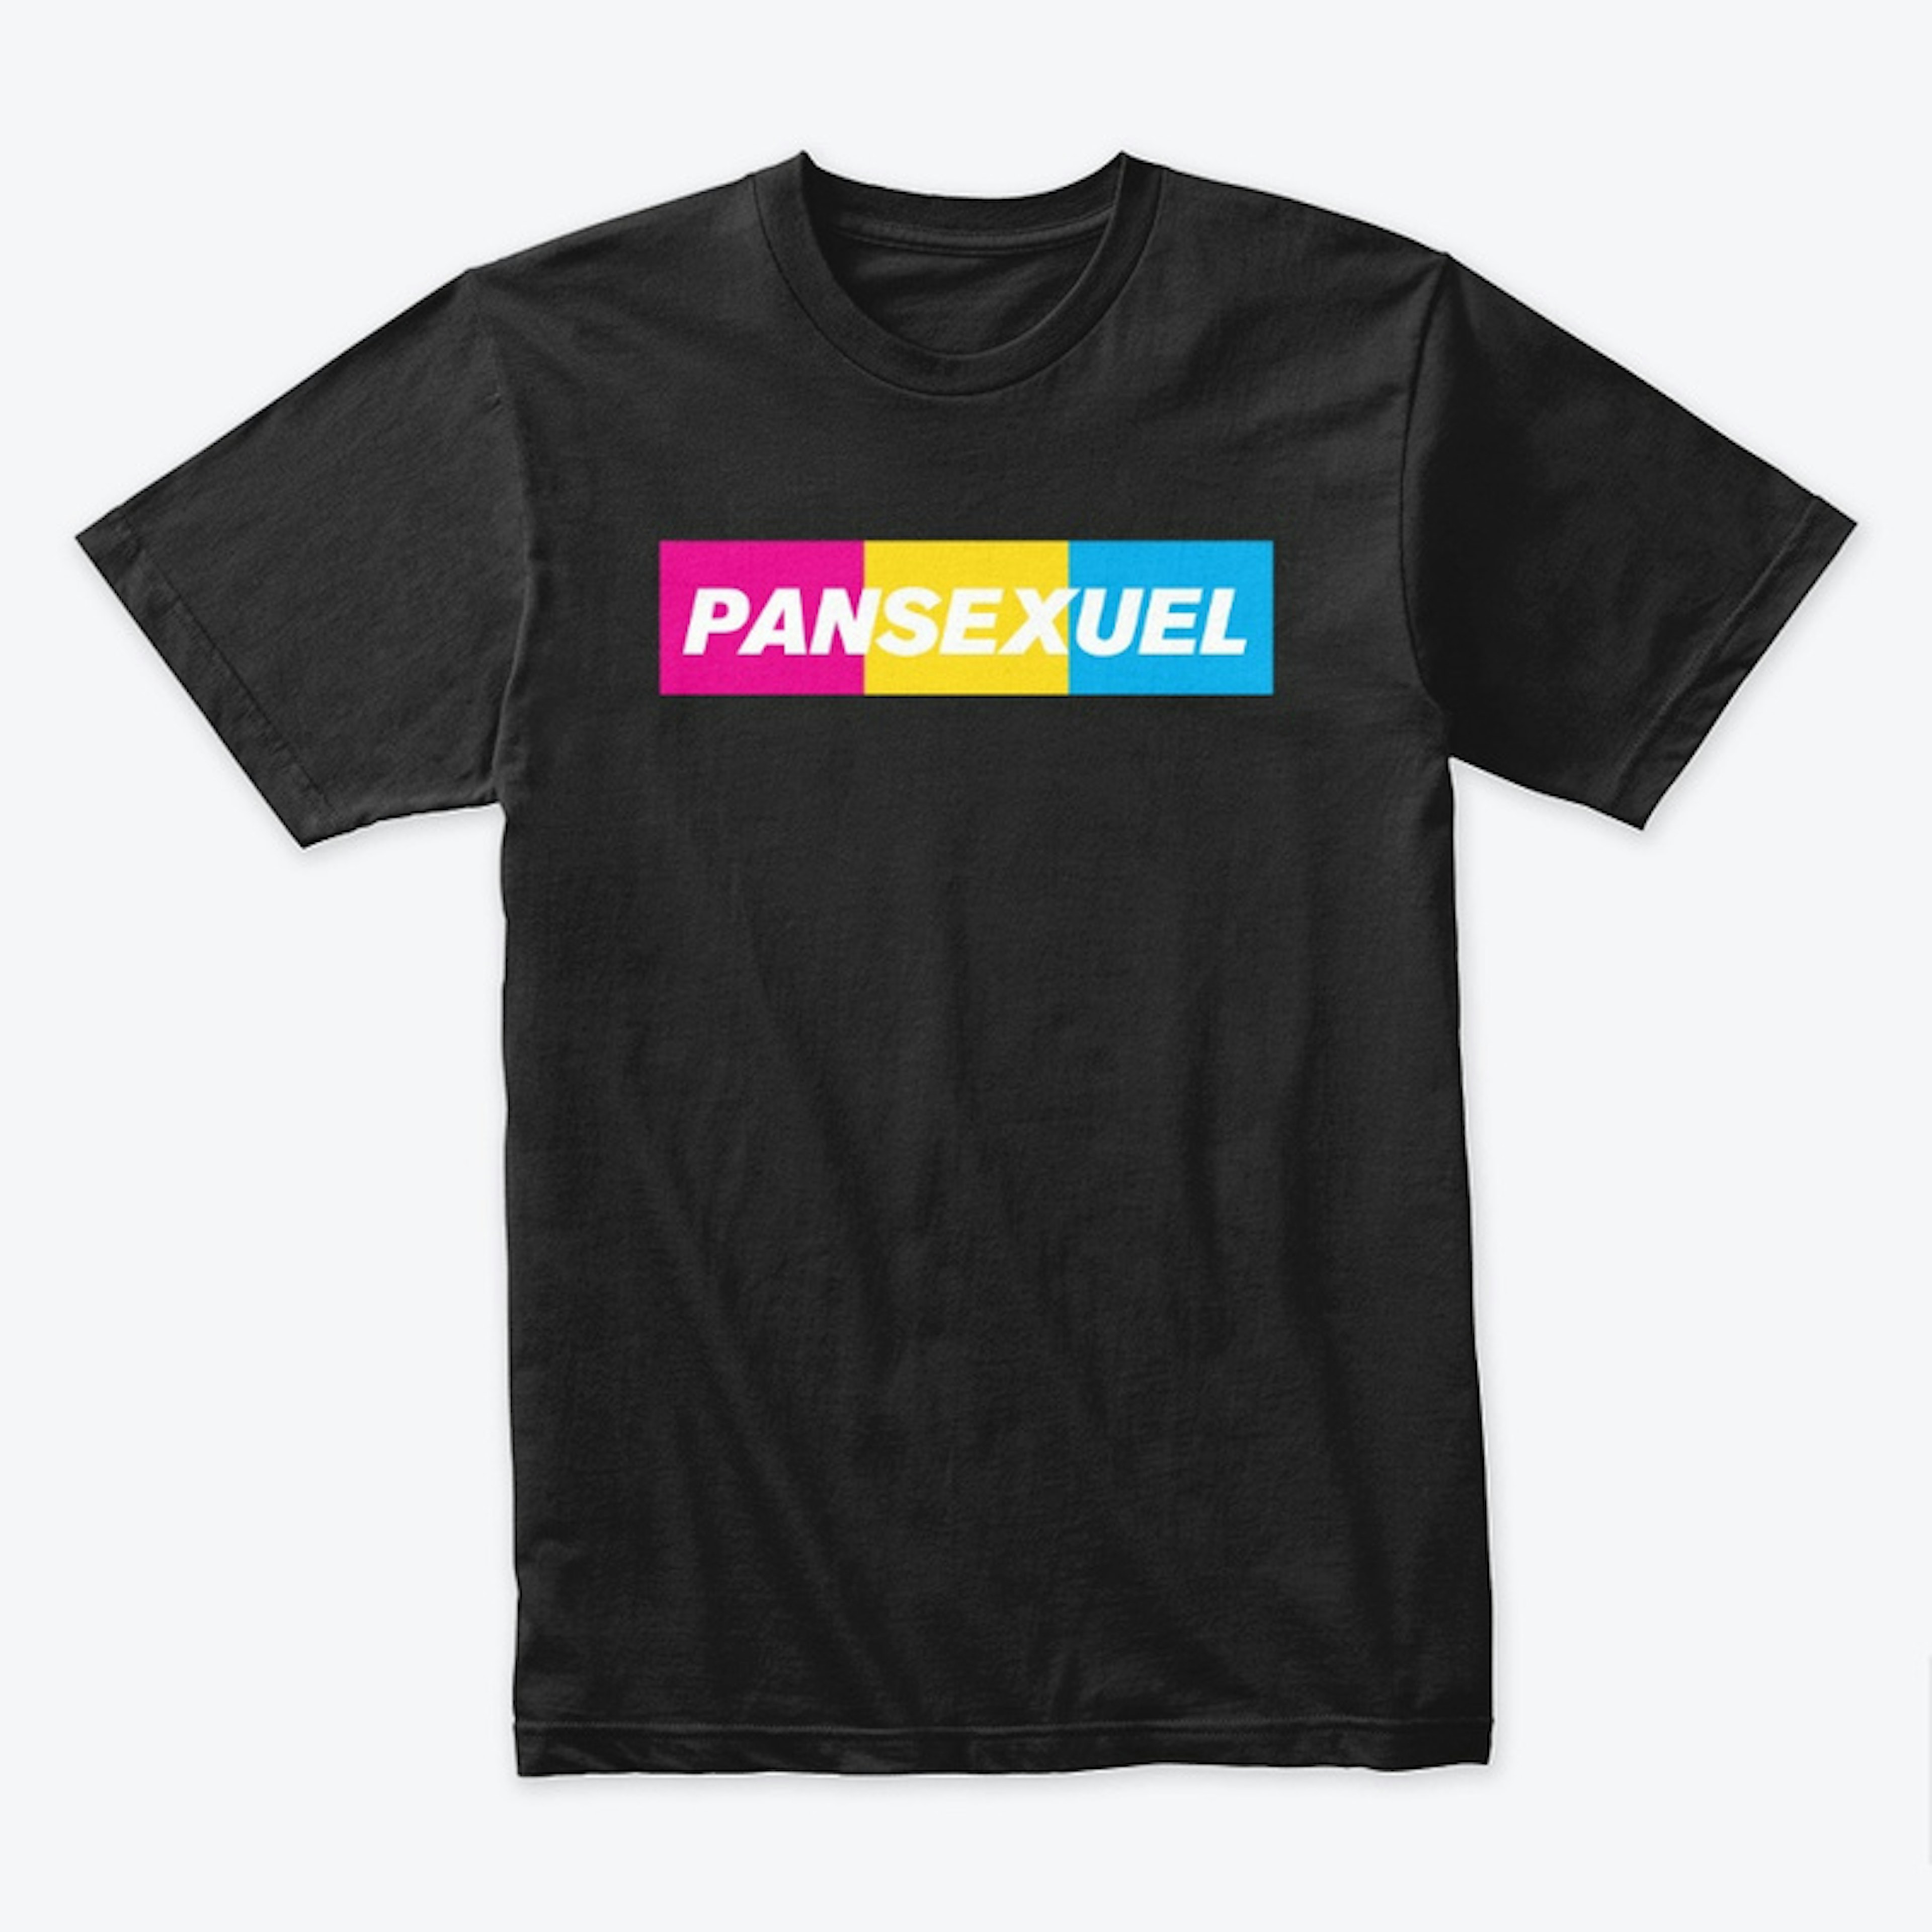 Pansexuel (colors)